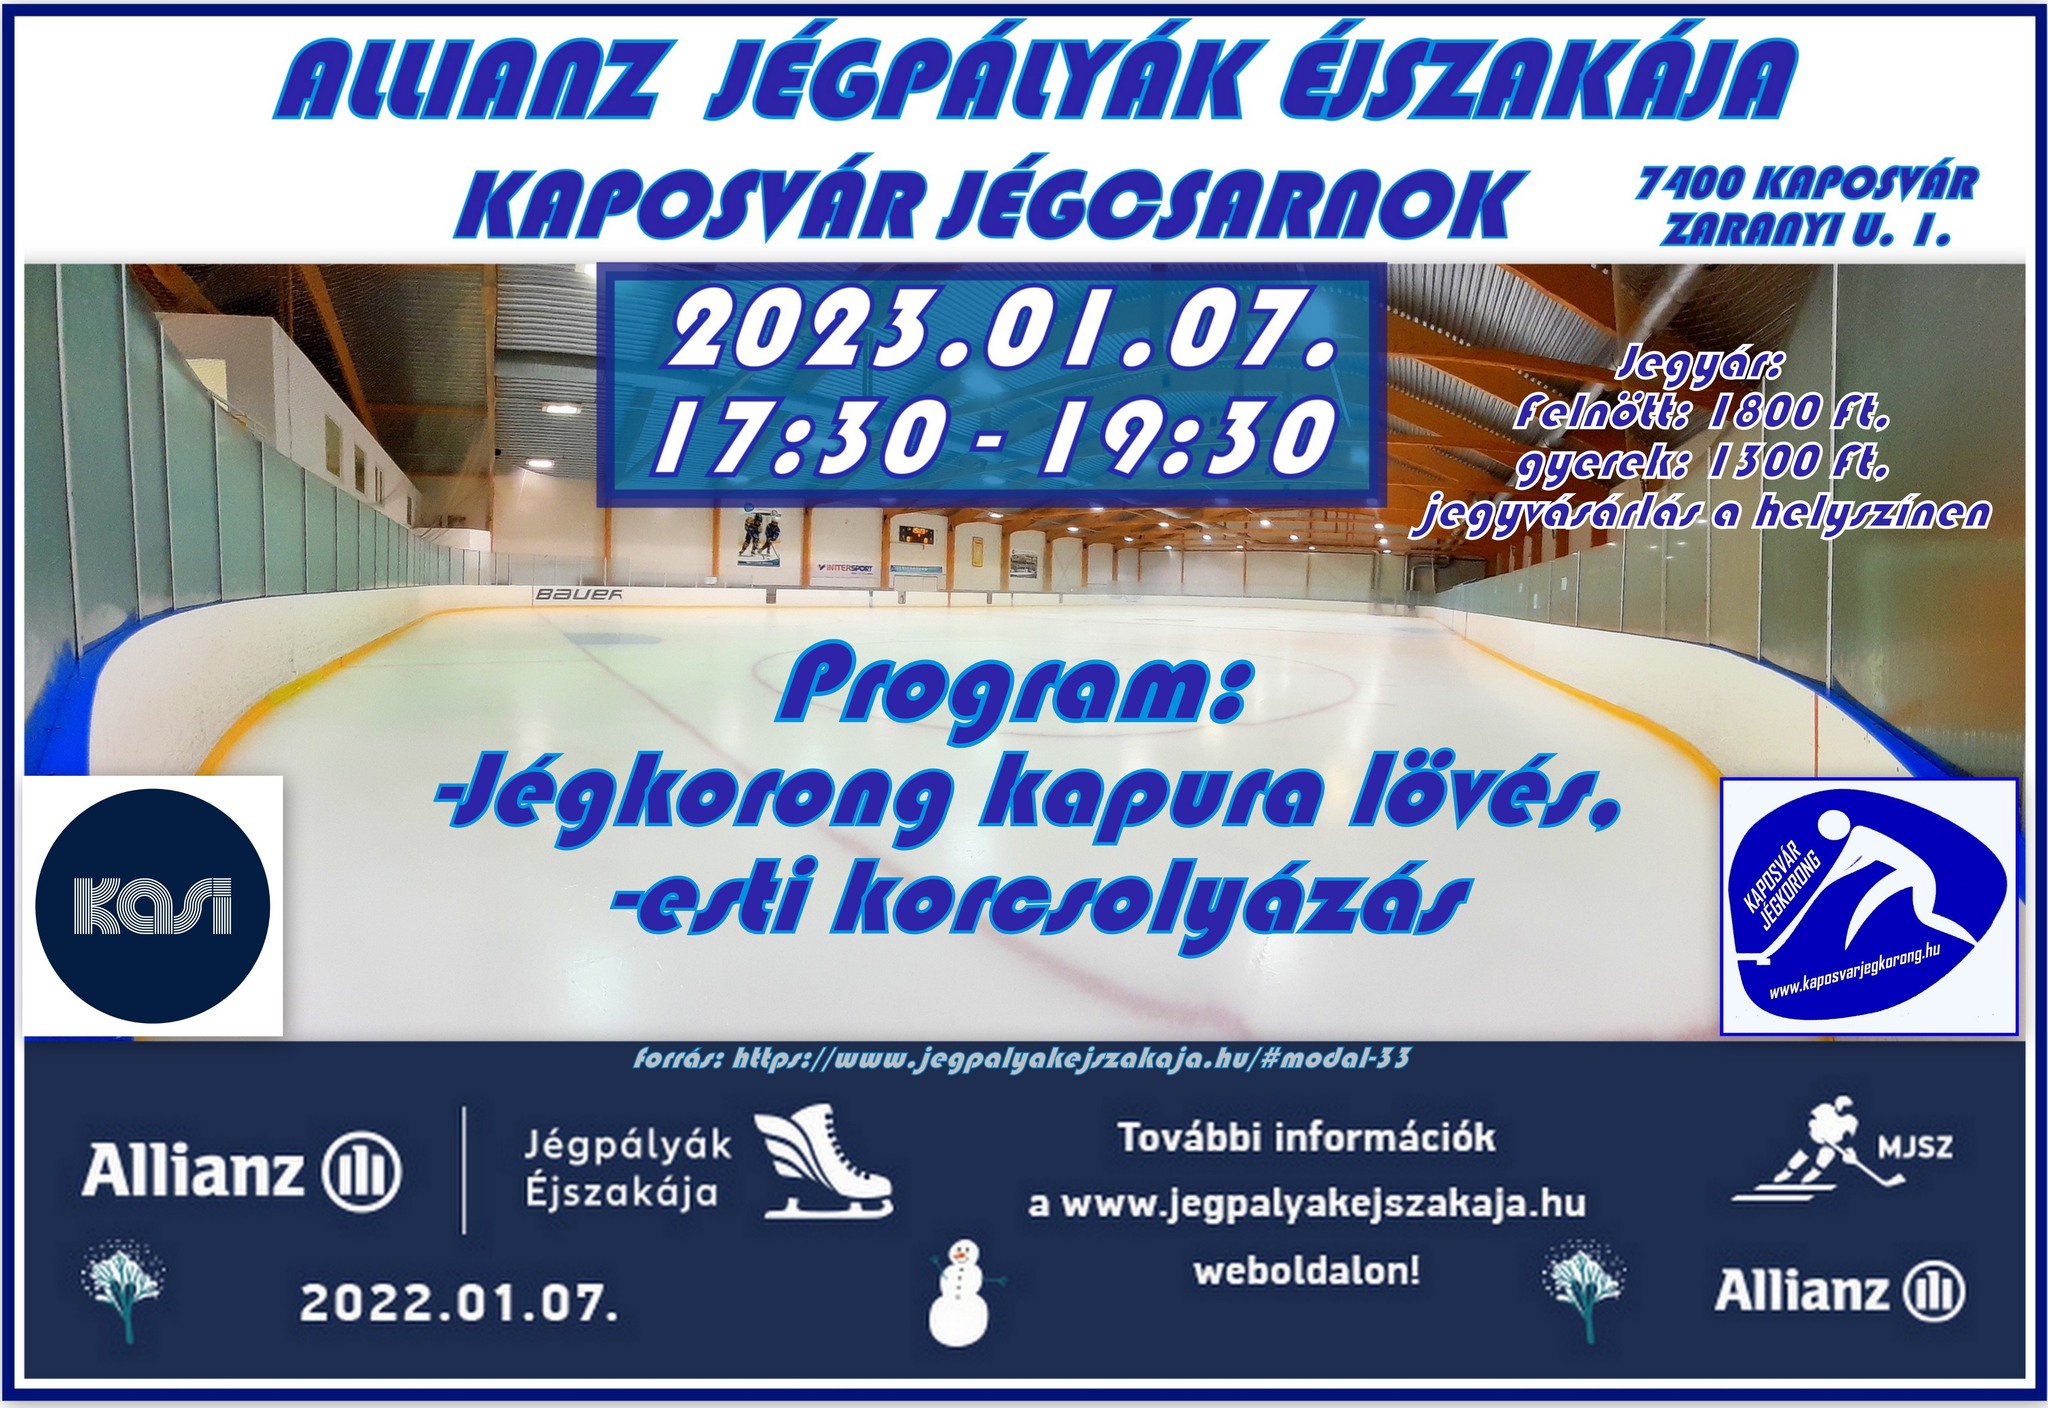 You are currently viewing Allianz – Jégpályák Éjszakája Kaposvár Jégcsarnok 2023.01.07. videó